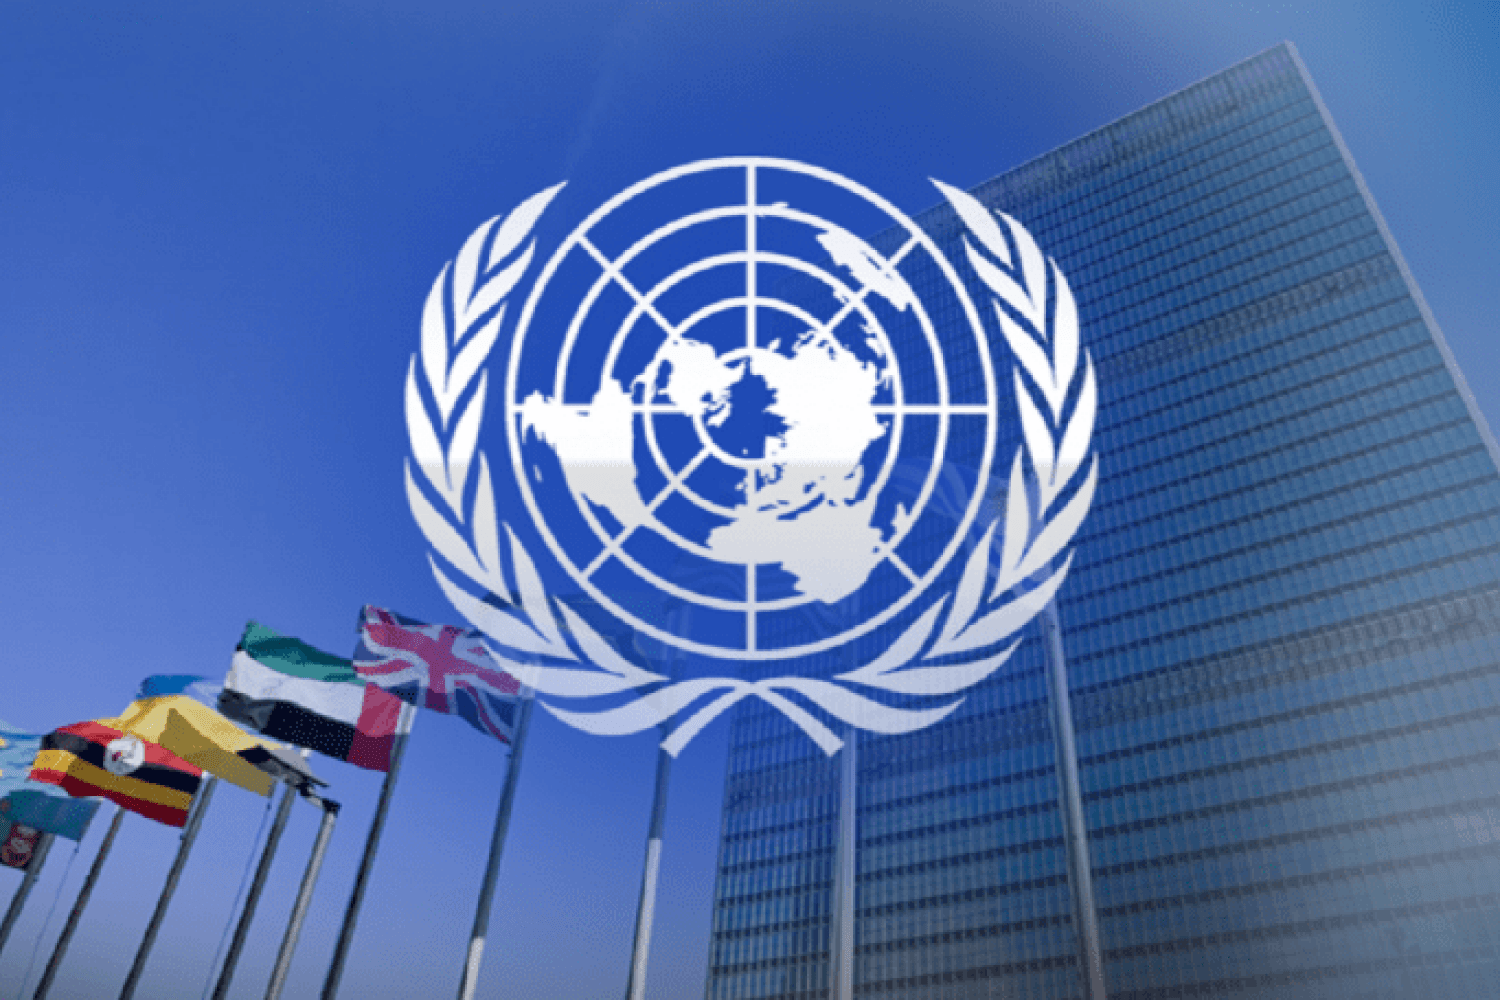 Стамбульская мирная инициатива. Международные организации ООН. Организация Объединенных наций (ООН). Генеральная Ассамблея ООН 2022. ЭКОСОС ООН.